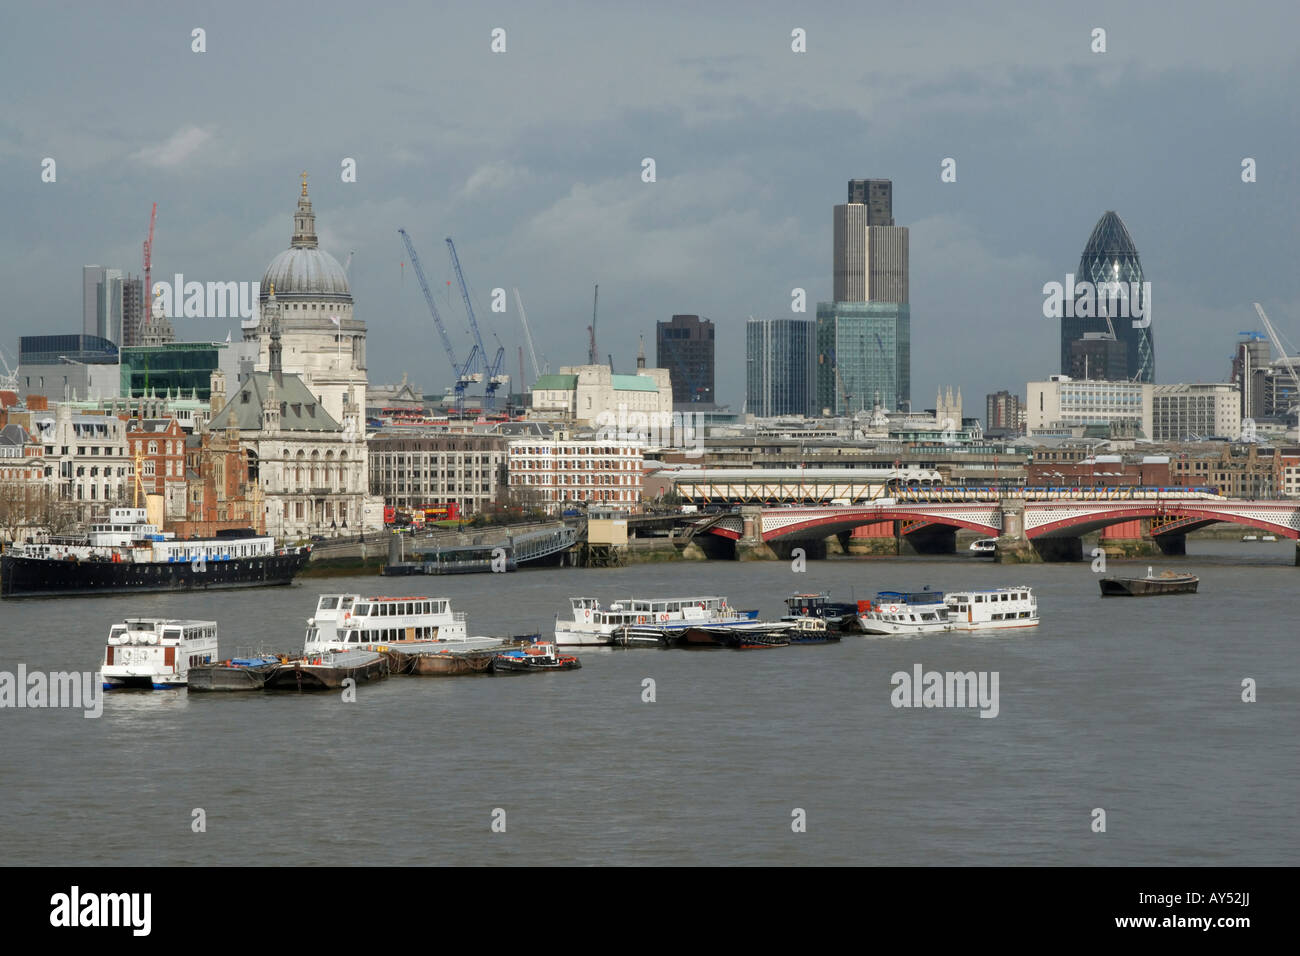 Vista de la ciudad de Londres (milla cuadrada) cruzando el río Támesis, con amarran embarcaciones turísticas en primer plano, Londres, Inglaterra Foto de stock